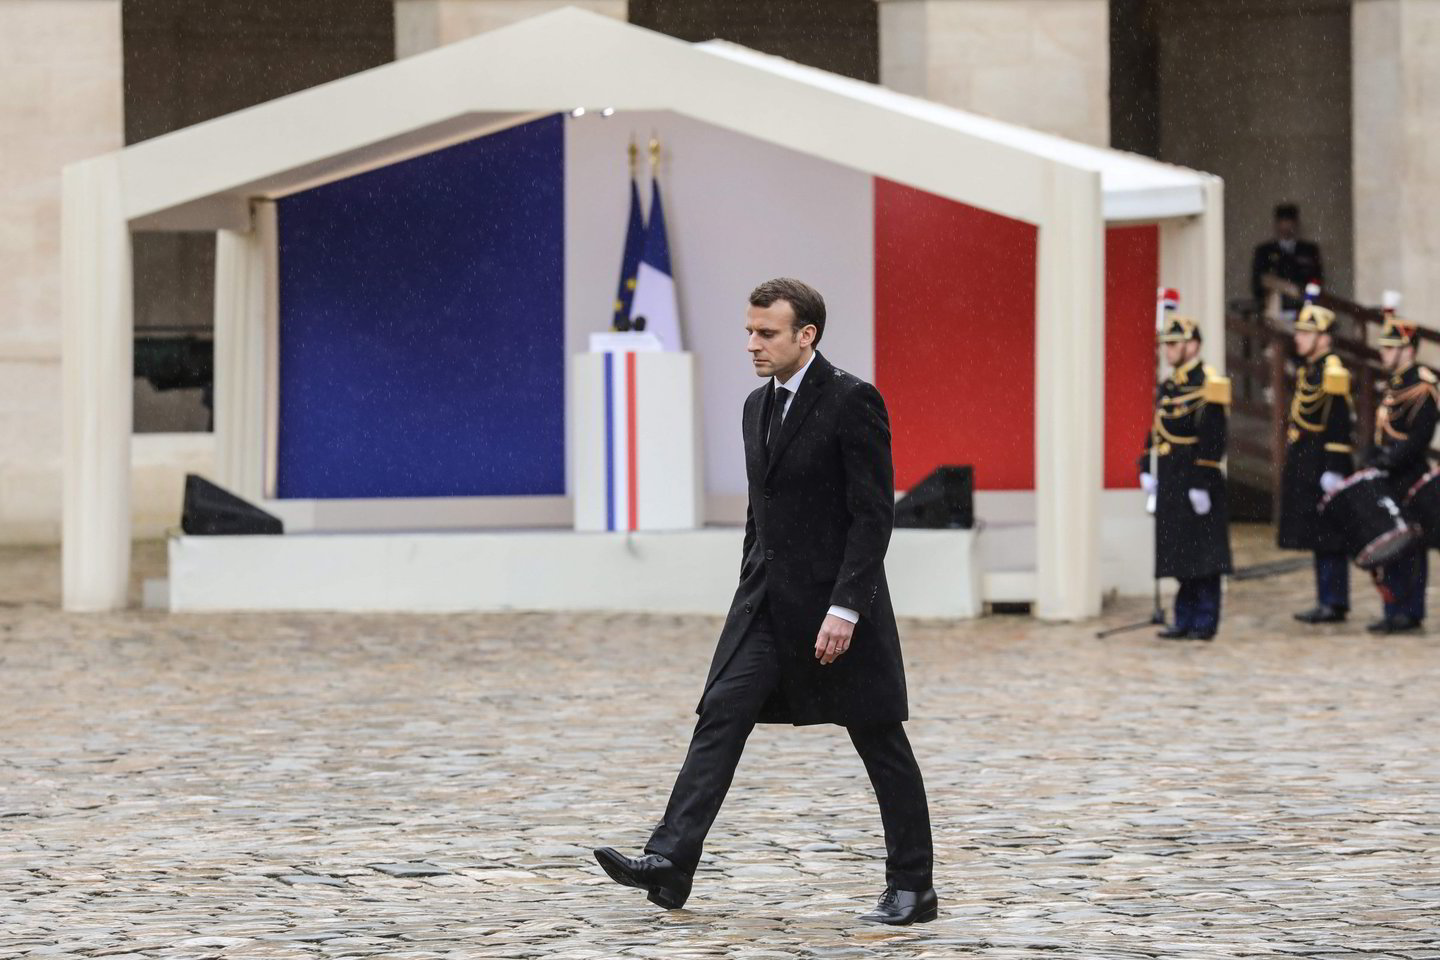  Prancūzai pagerbė žuvusio policininko atminimą.<br> AFP/Scanpix nuotr.